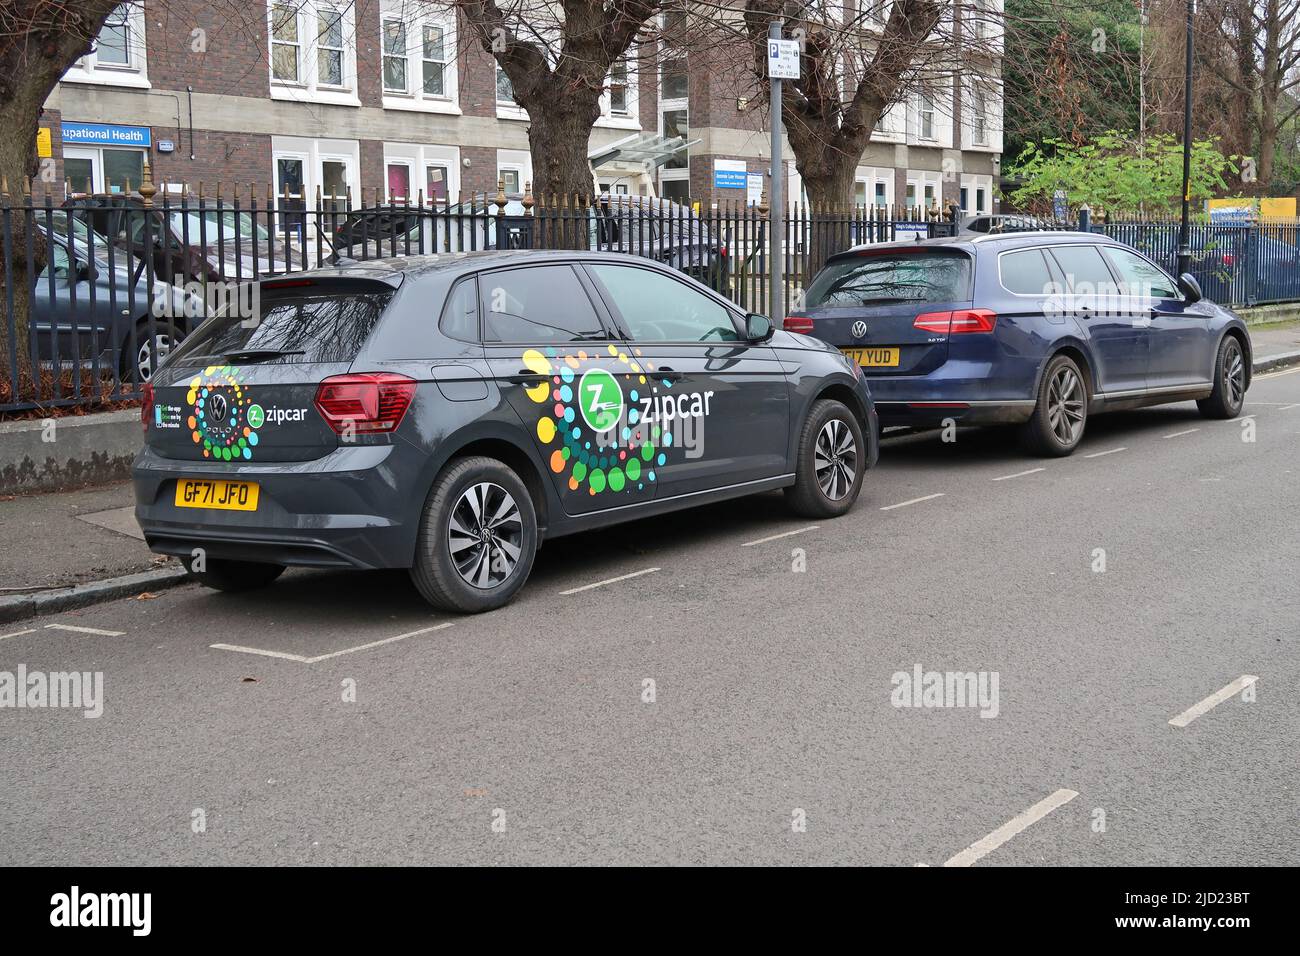 Londres, Reino Unido. Un Volkswagen Polo eléctrico del club de coches Zipcar está estacionado en una calle residencial de Camberwell. Foto de stock